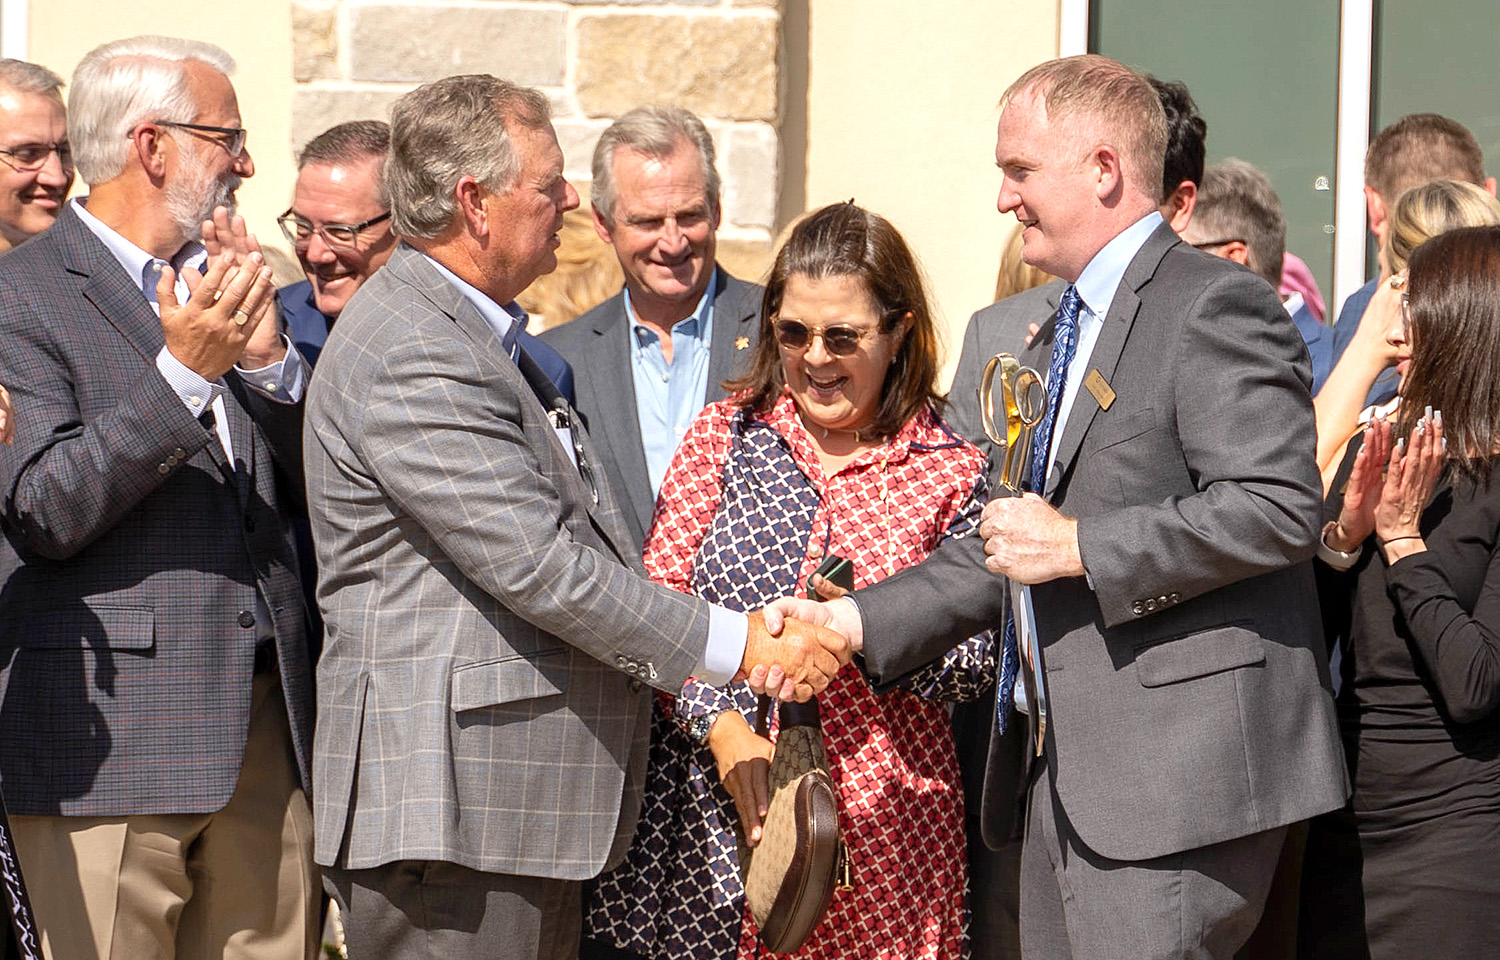 Texas Regional Bank opens branch in San Antonio